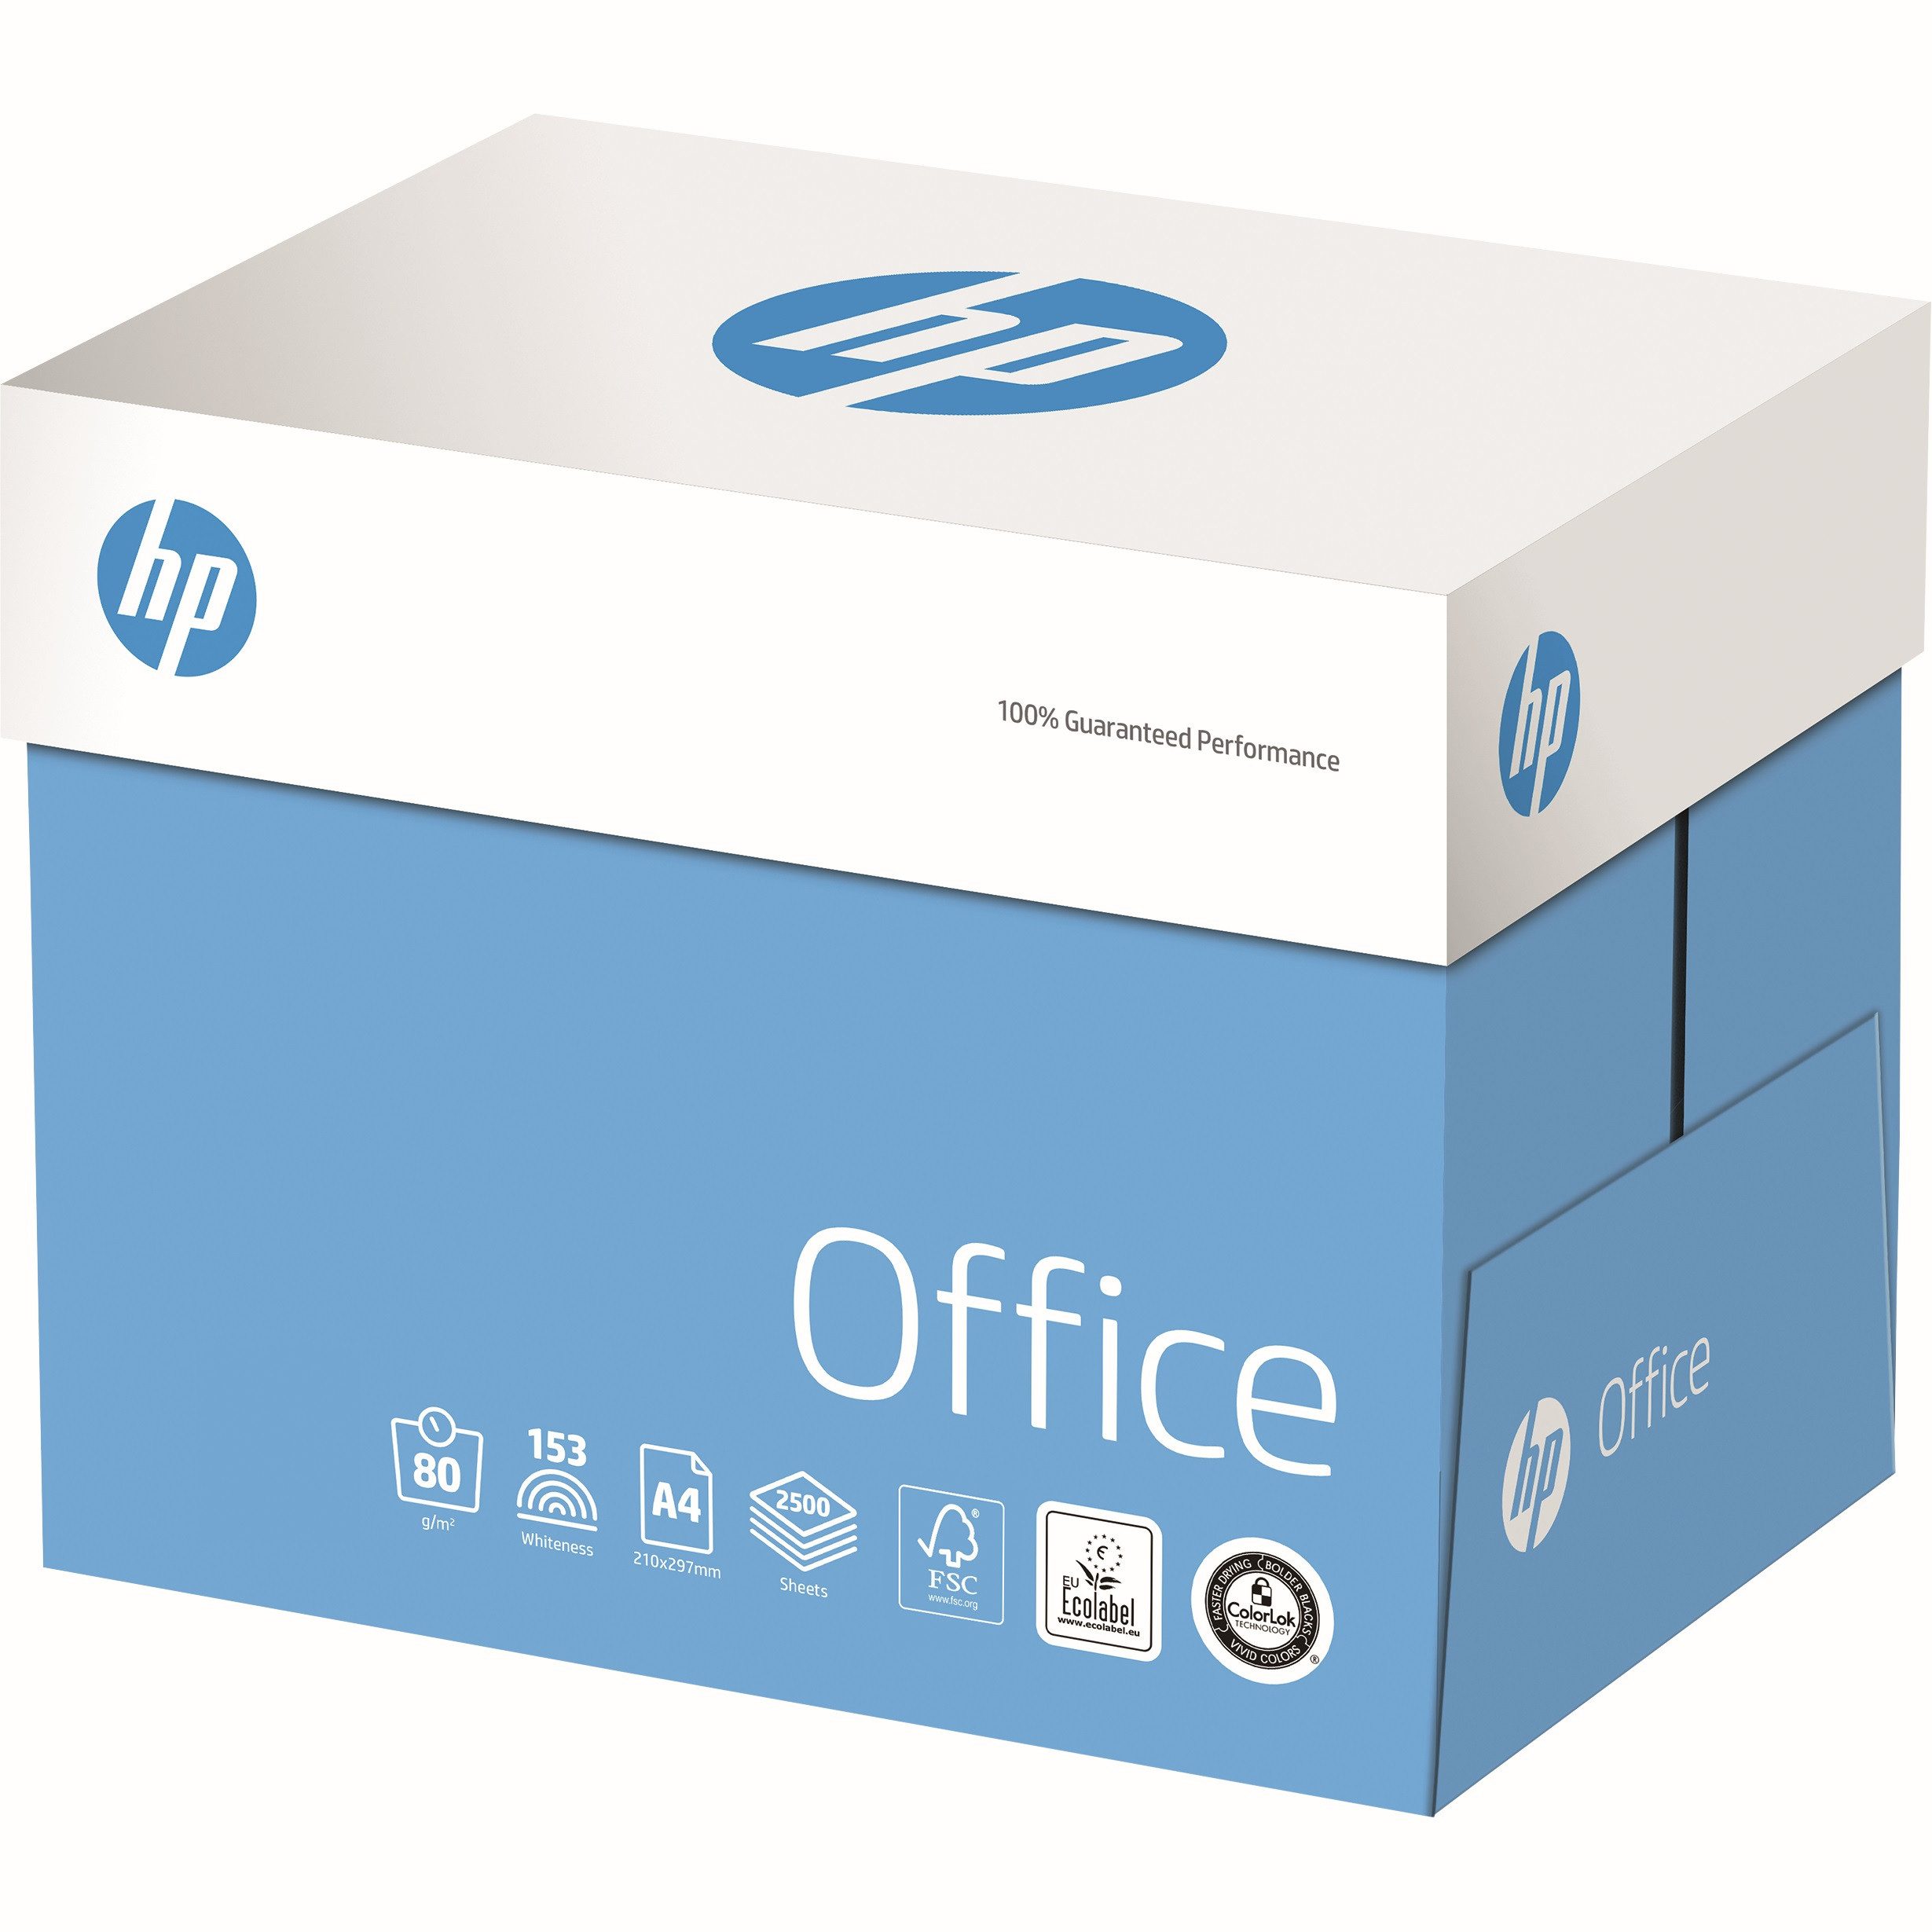 HP ENVY Inspire 7220e AiO Printer Kopierpapier hp Kopierpapier OFFICE, DIN A4, 80 g/m², Öko-Box: 2.500 Blatt, ElementarChlorFrei gebleicht (ECF), holzfrei